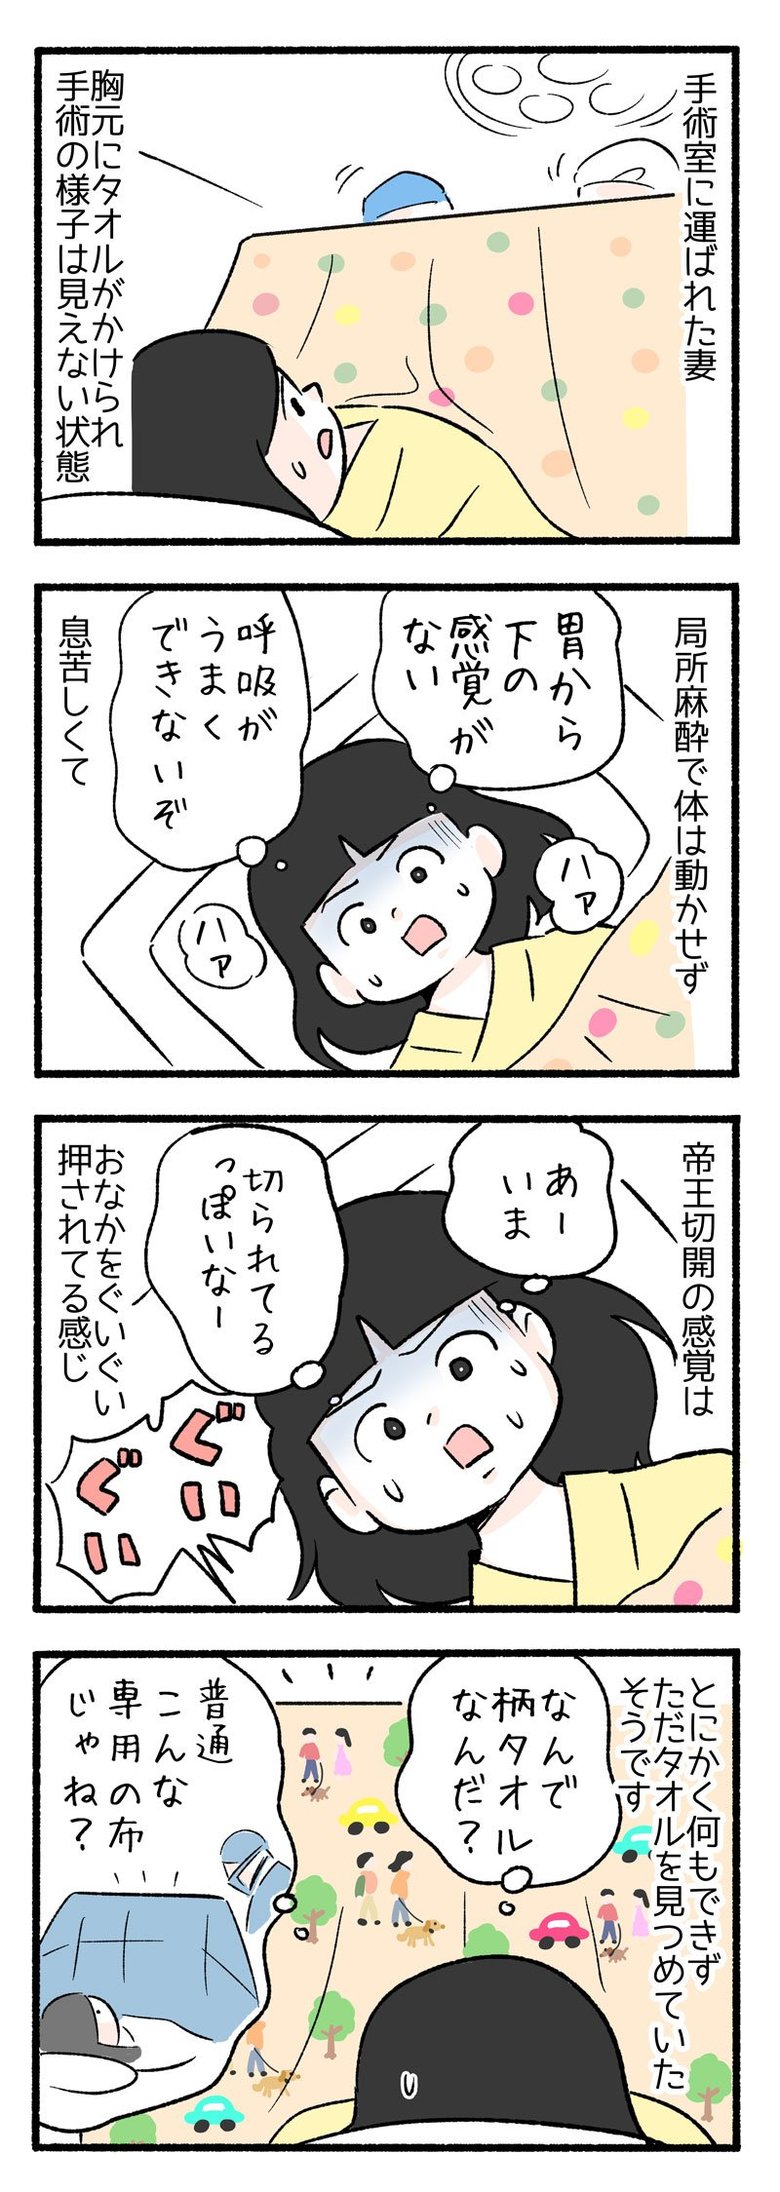 manga-nihipapa4-2